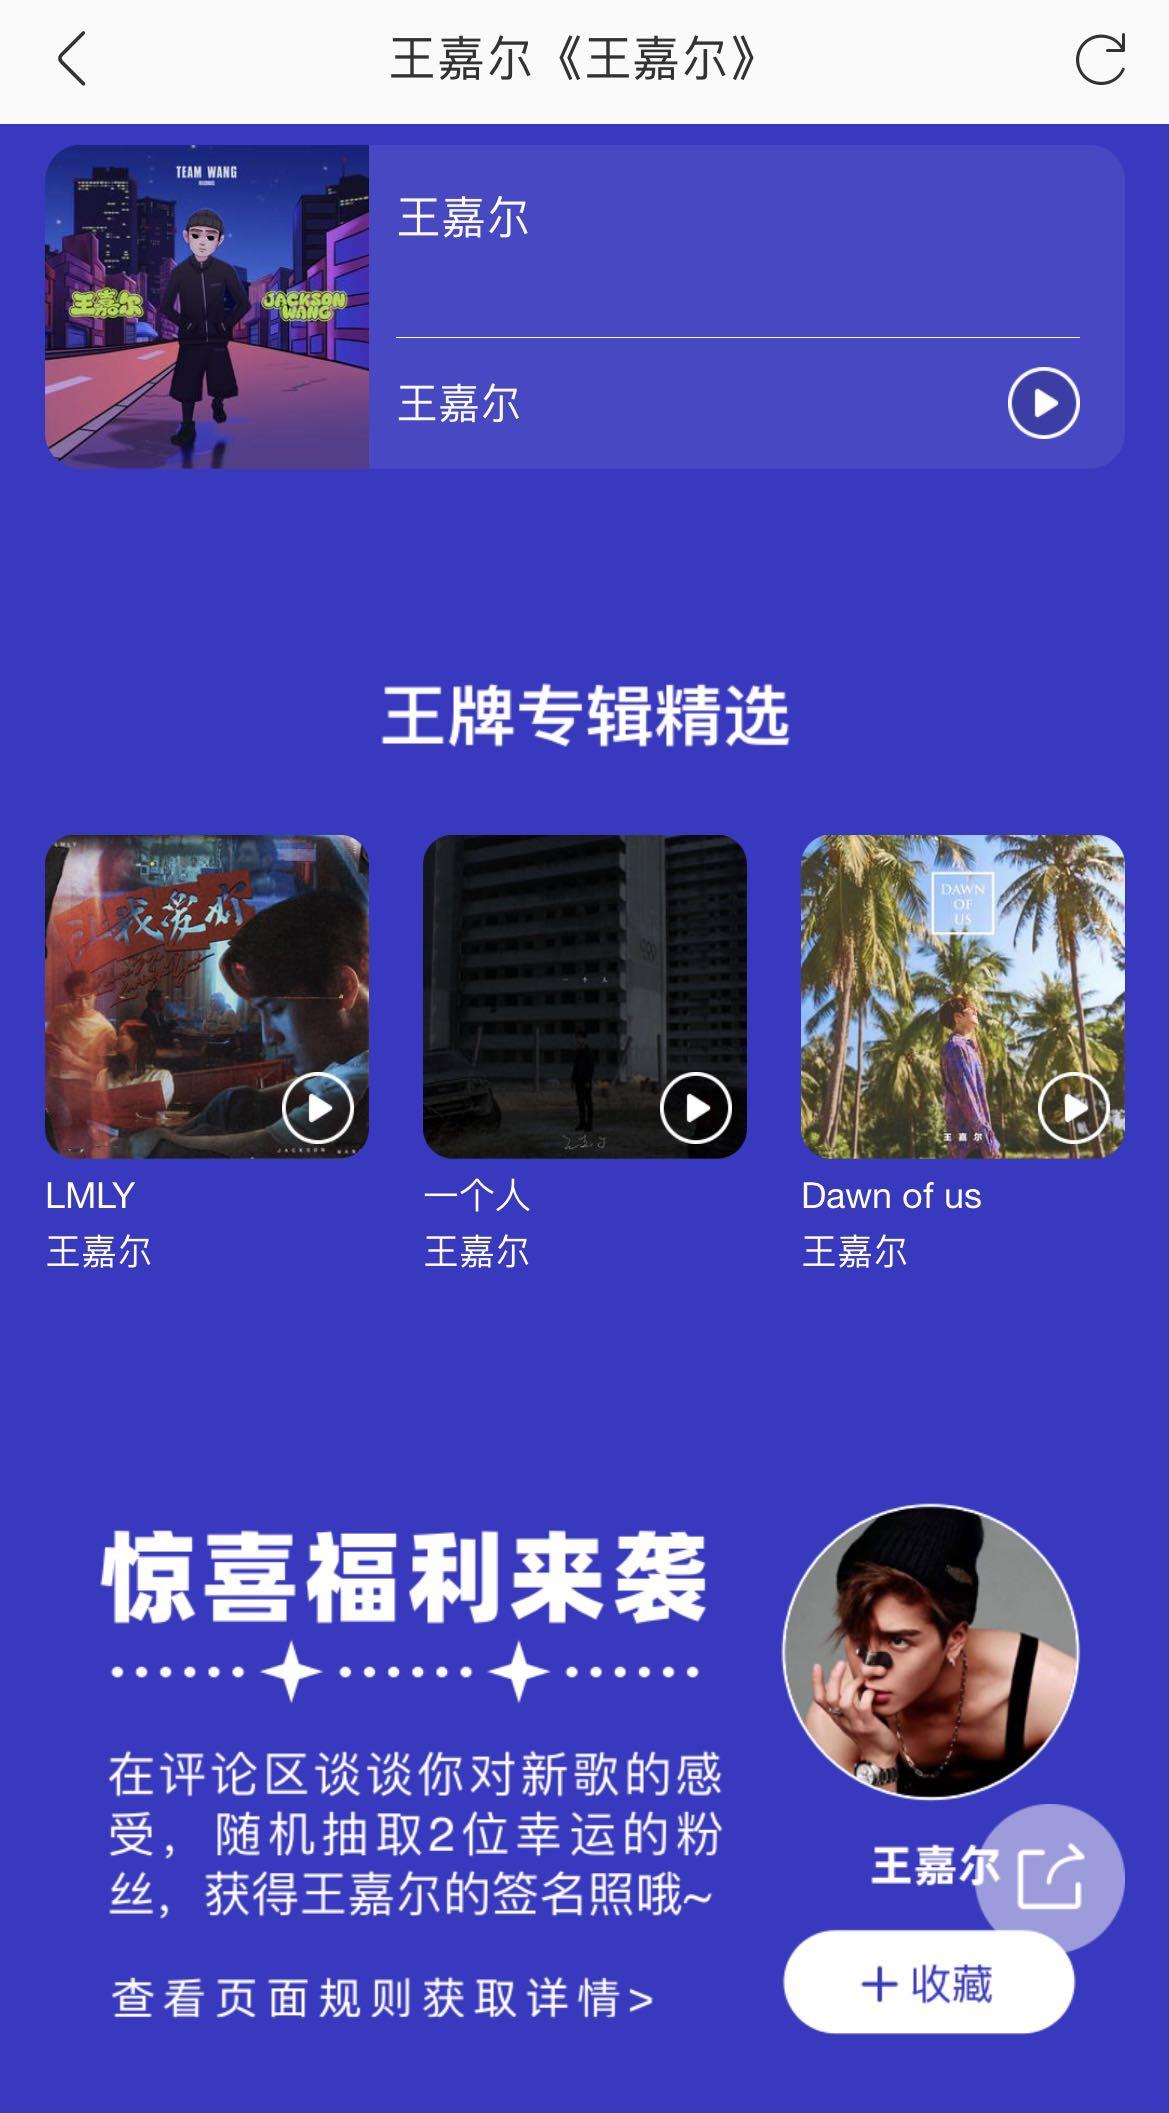 向世界传递中国声音！来酷我音乐听王嘉尔全新同名单曲赢GAGA签名照